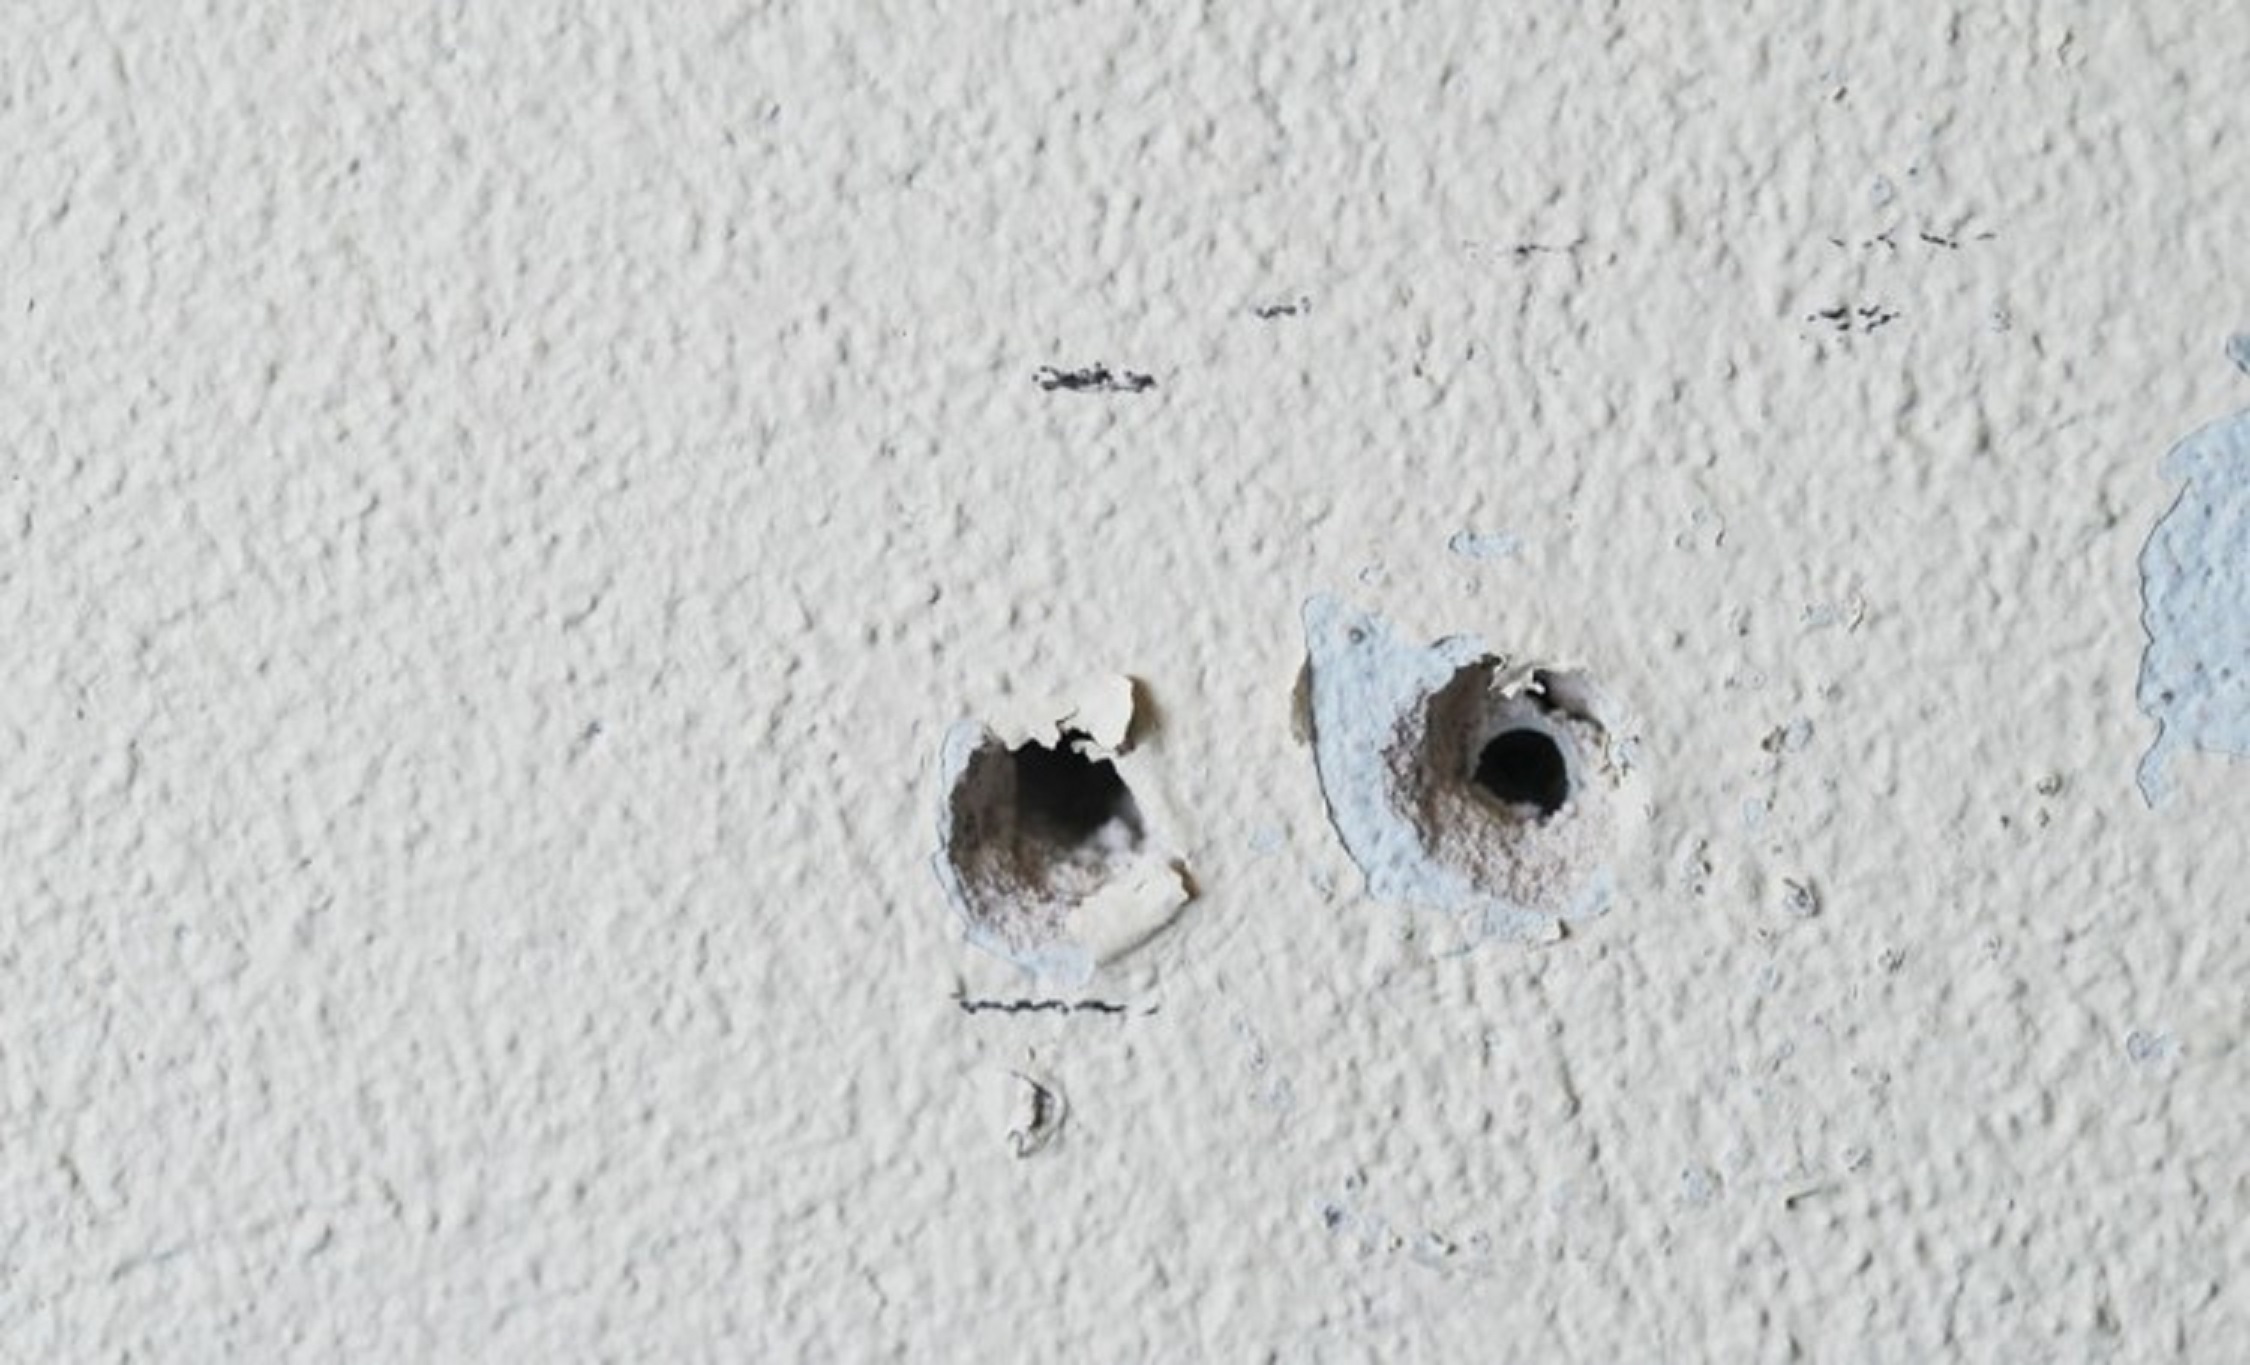 Cómo reparar y rellenar un agujero en una pared?